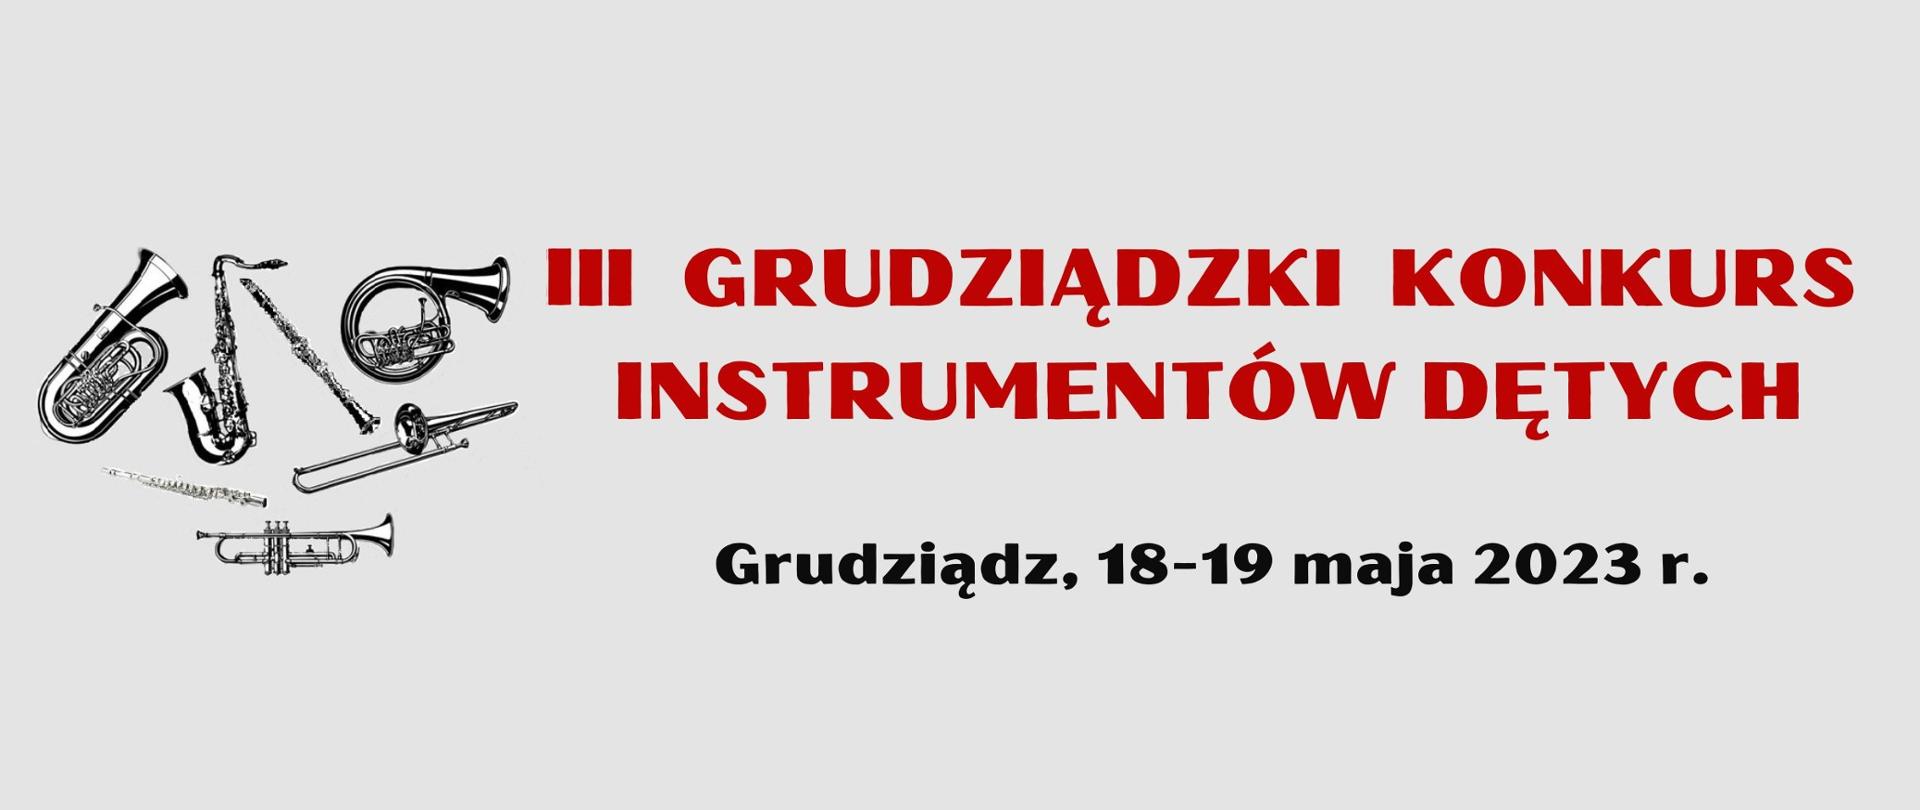 Czerwony napis III GRUDZIĄDZKI KONKURS INSTRUMENTÓW DĘTYCH, czarny napis Grudziądz, 18-19 maja 2023 r. na szarym tle. Po lewej logo złożone z 7 instrumentów dętych